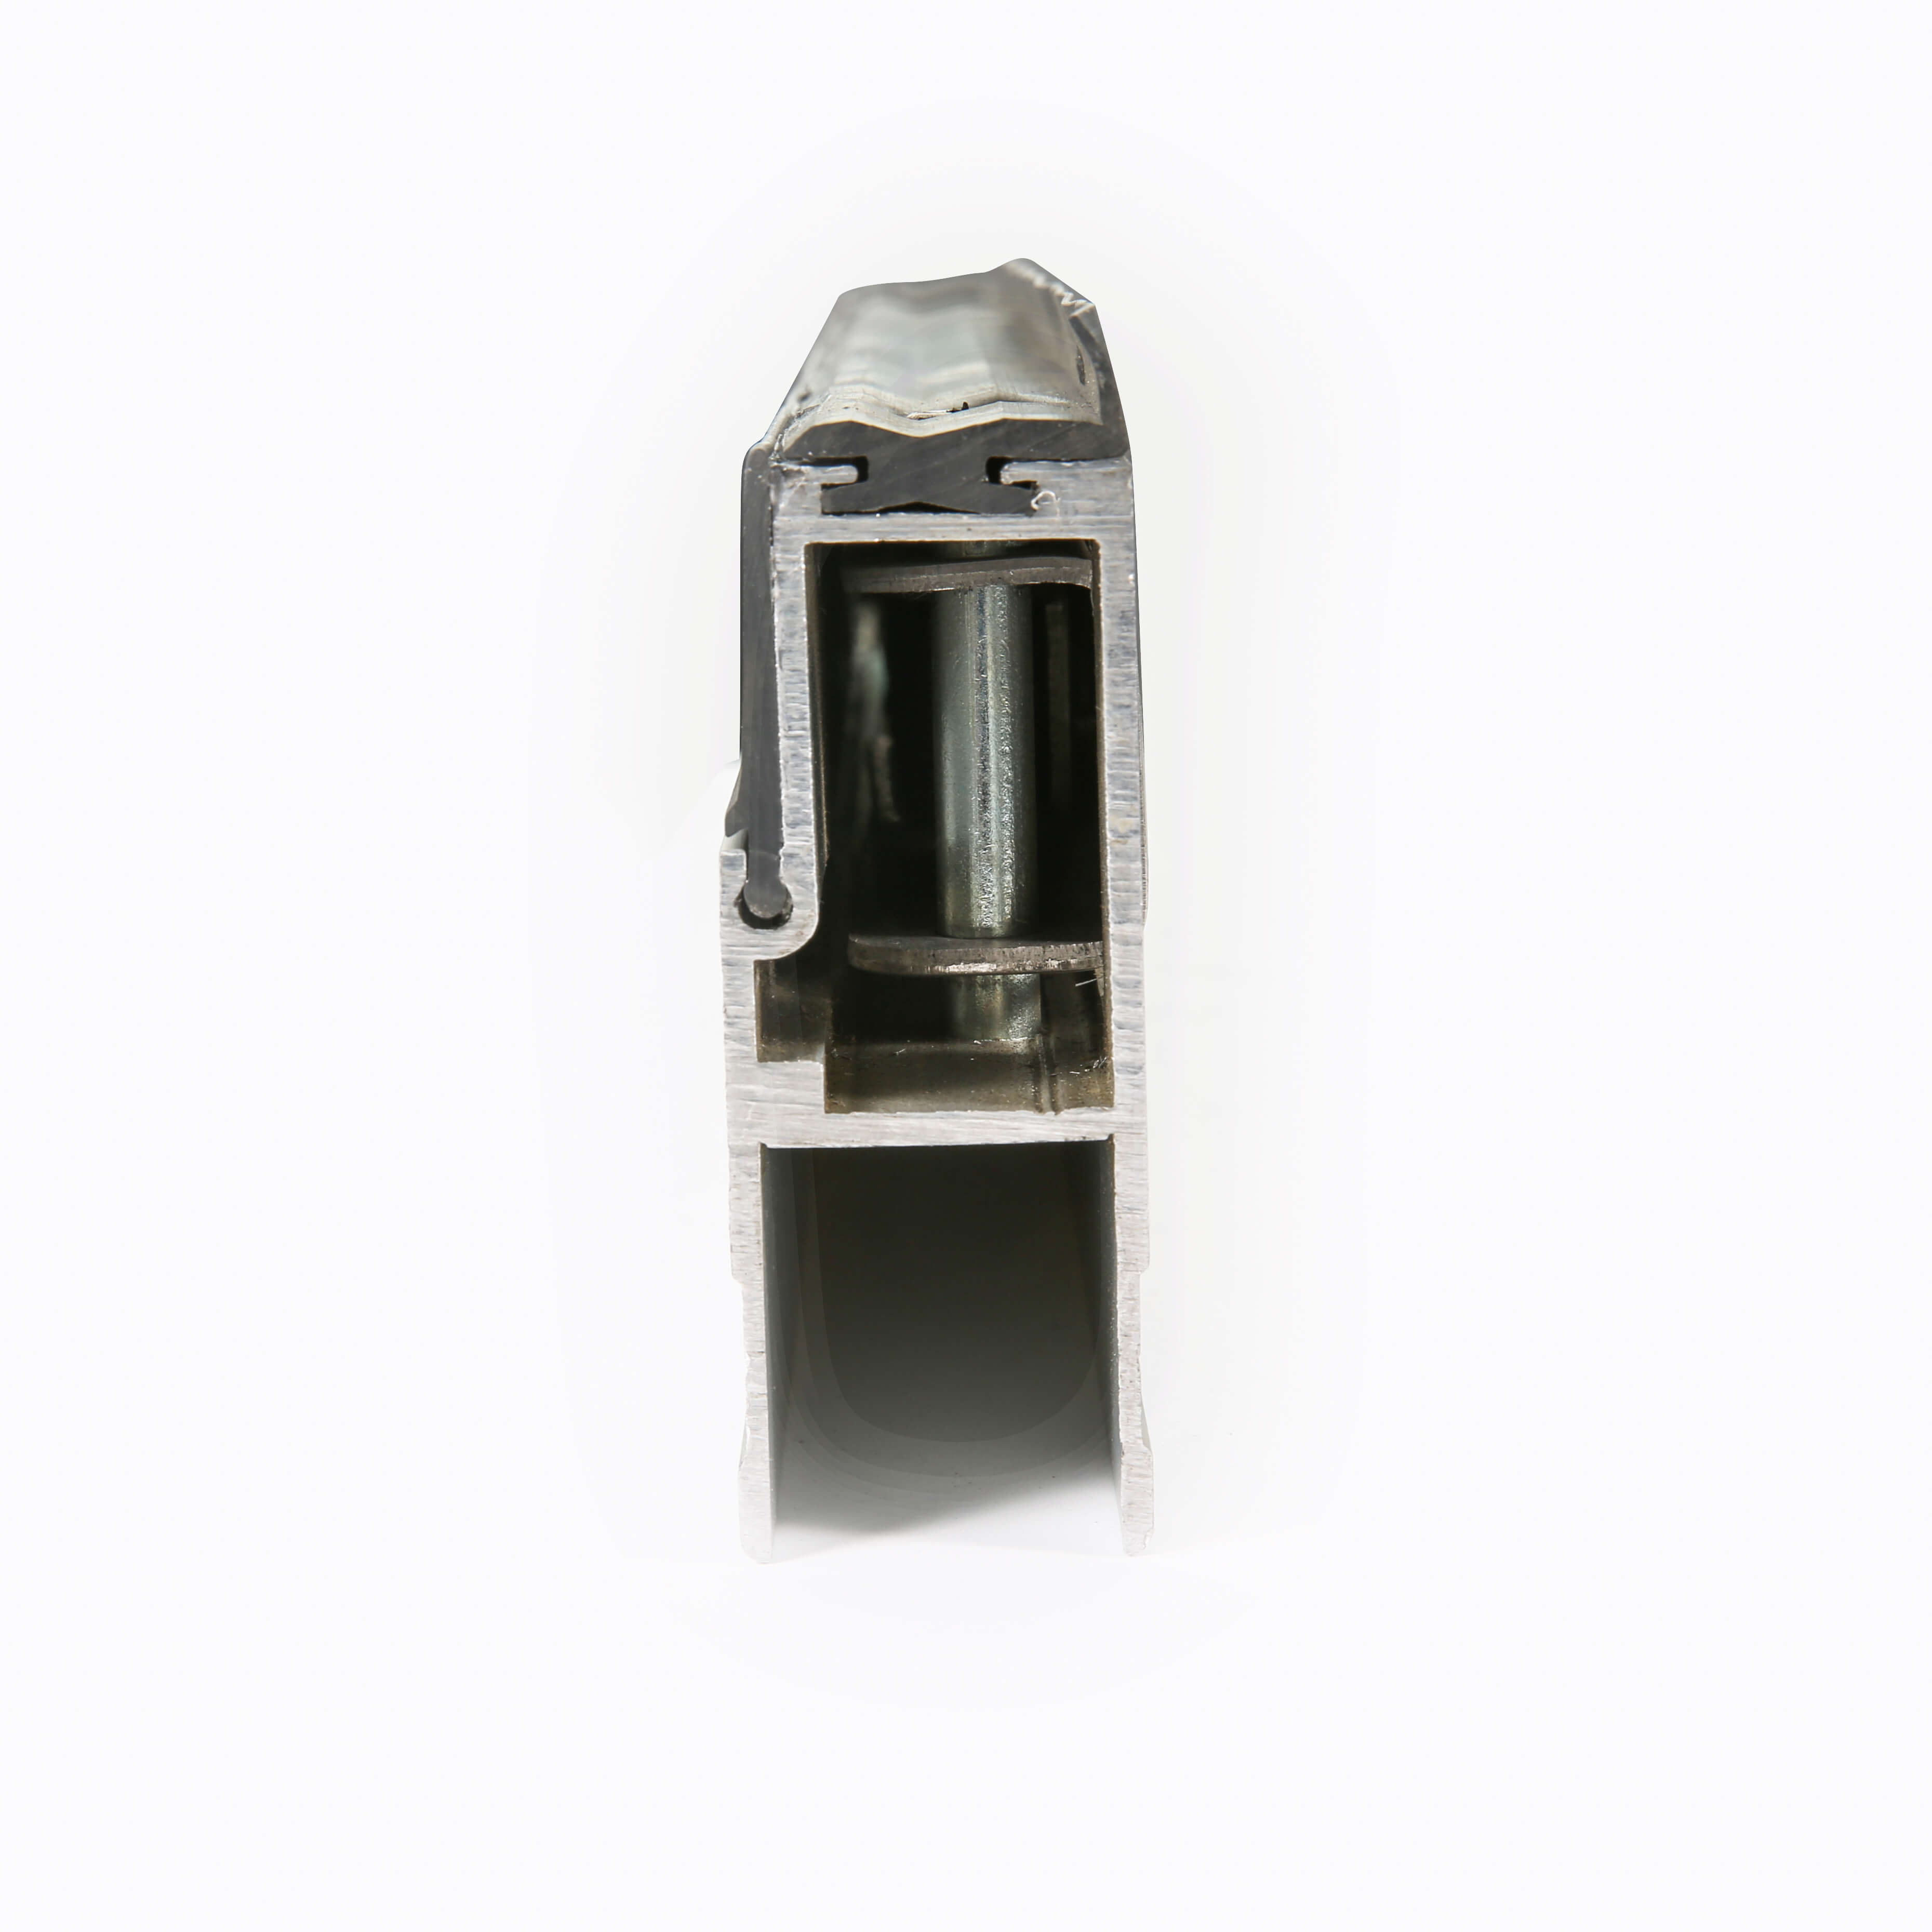 Dropside lock 106640-1000L or R